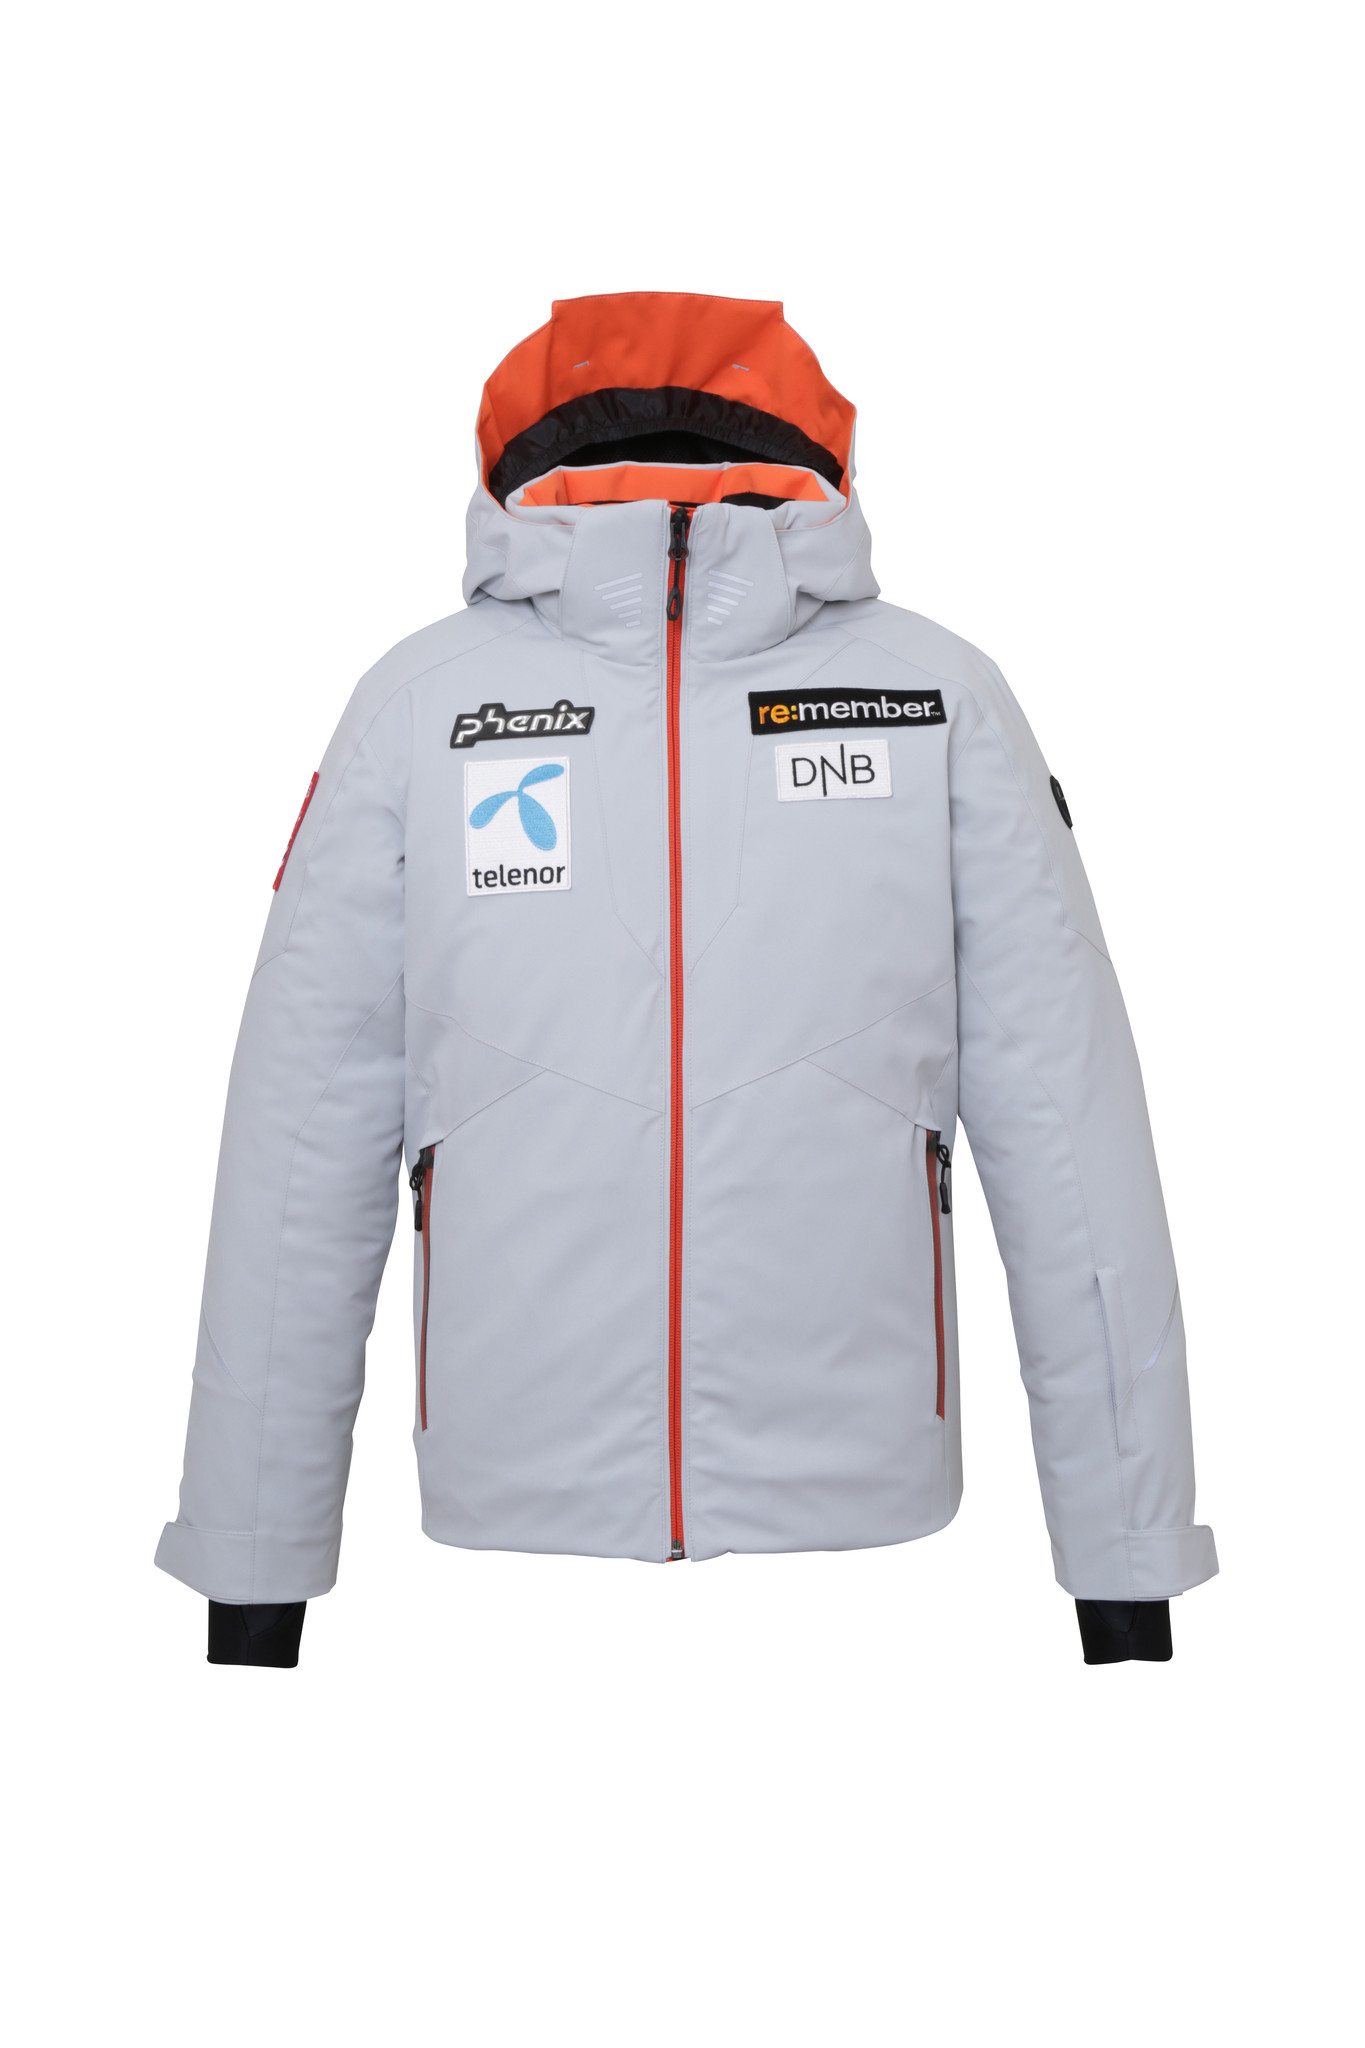 新品タグ付き\nPhenix Norway Team Model jacketドローコード